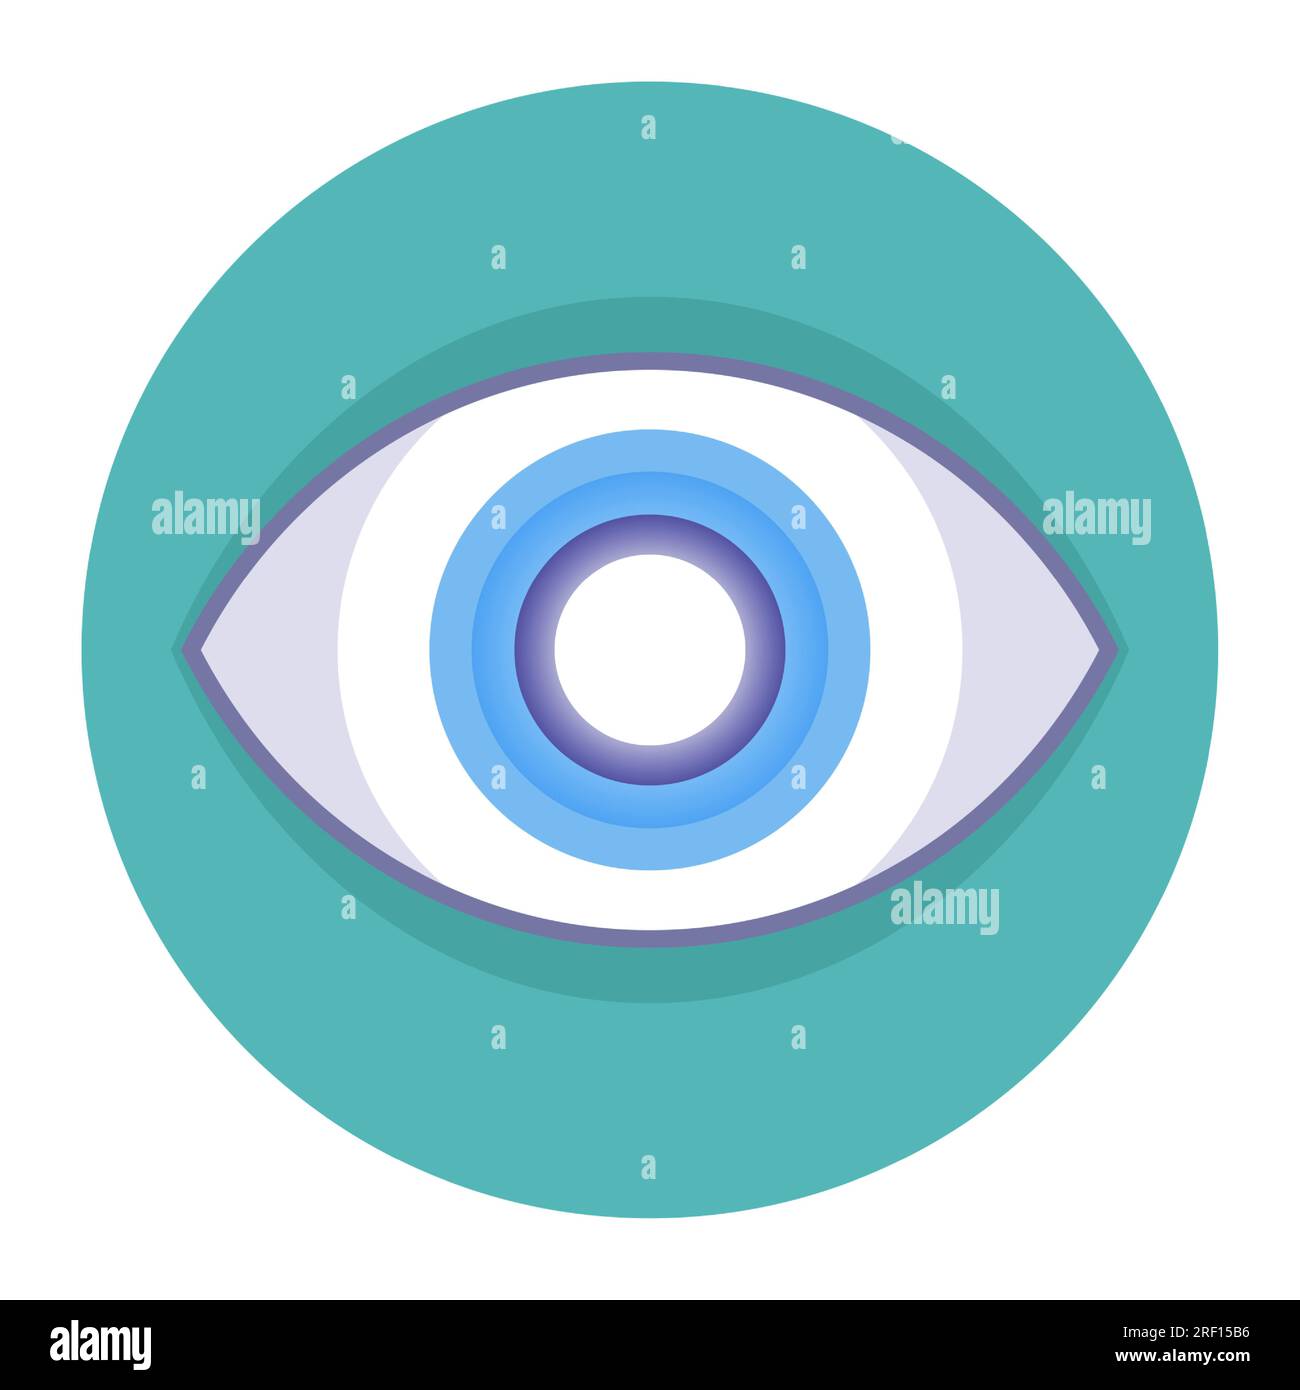 Kataraktsymbol am menschlichen Auge. Abbildung eines flachen Vektors. Stock Vektor